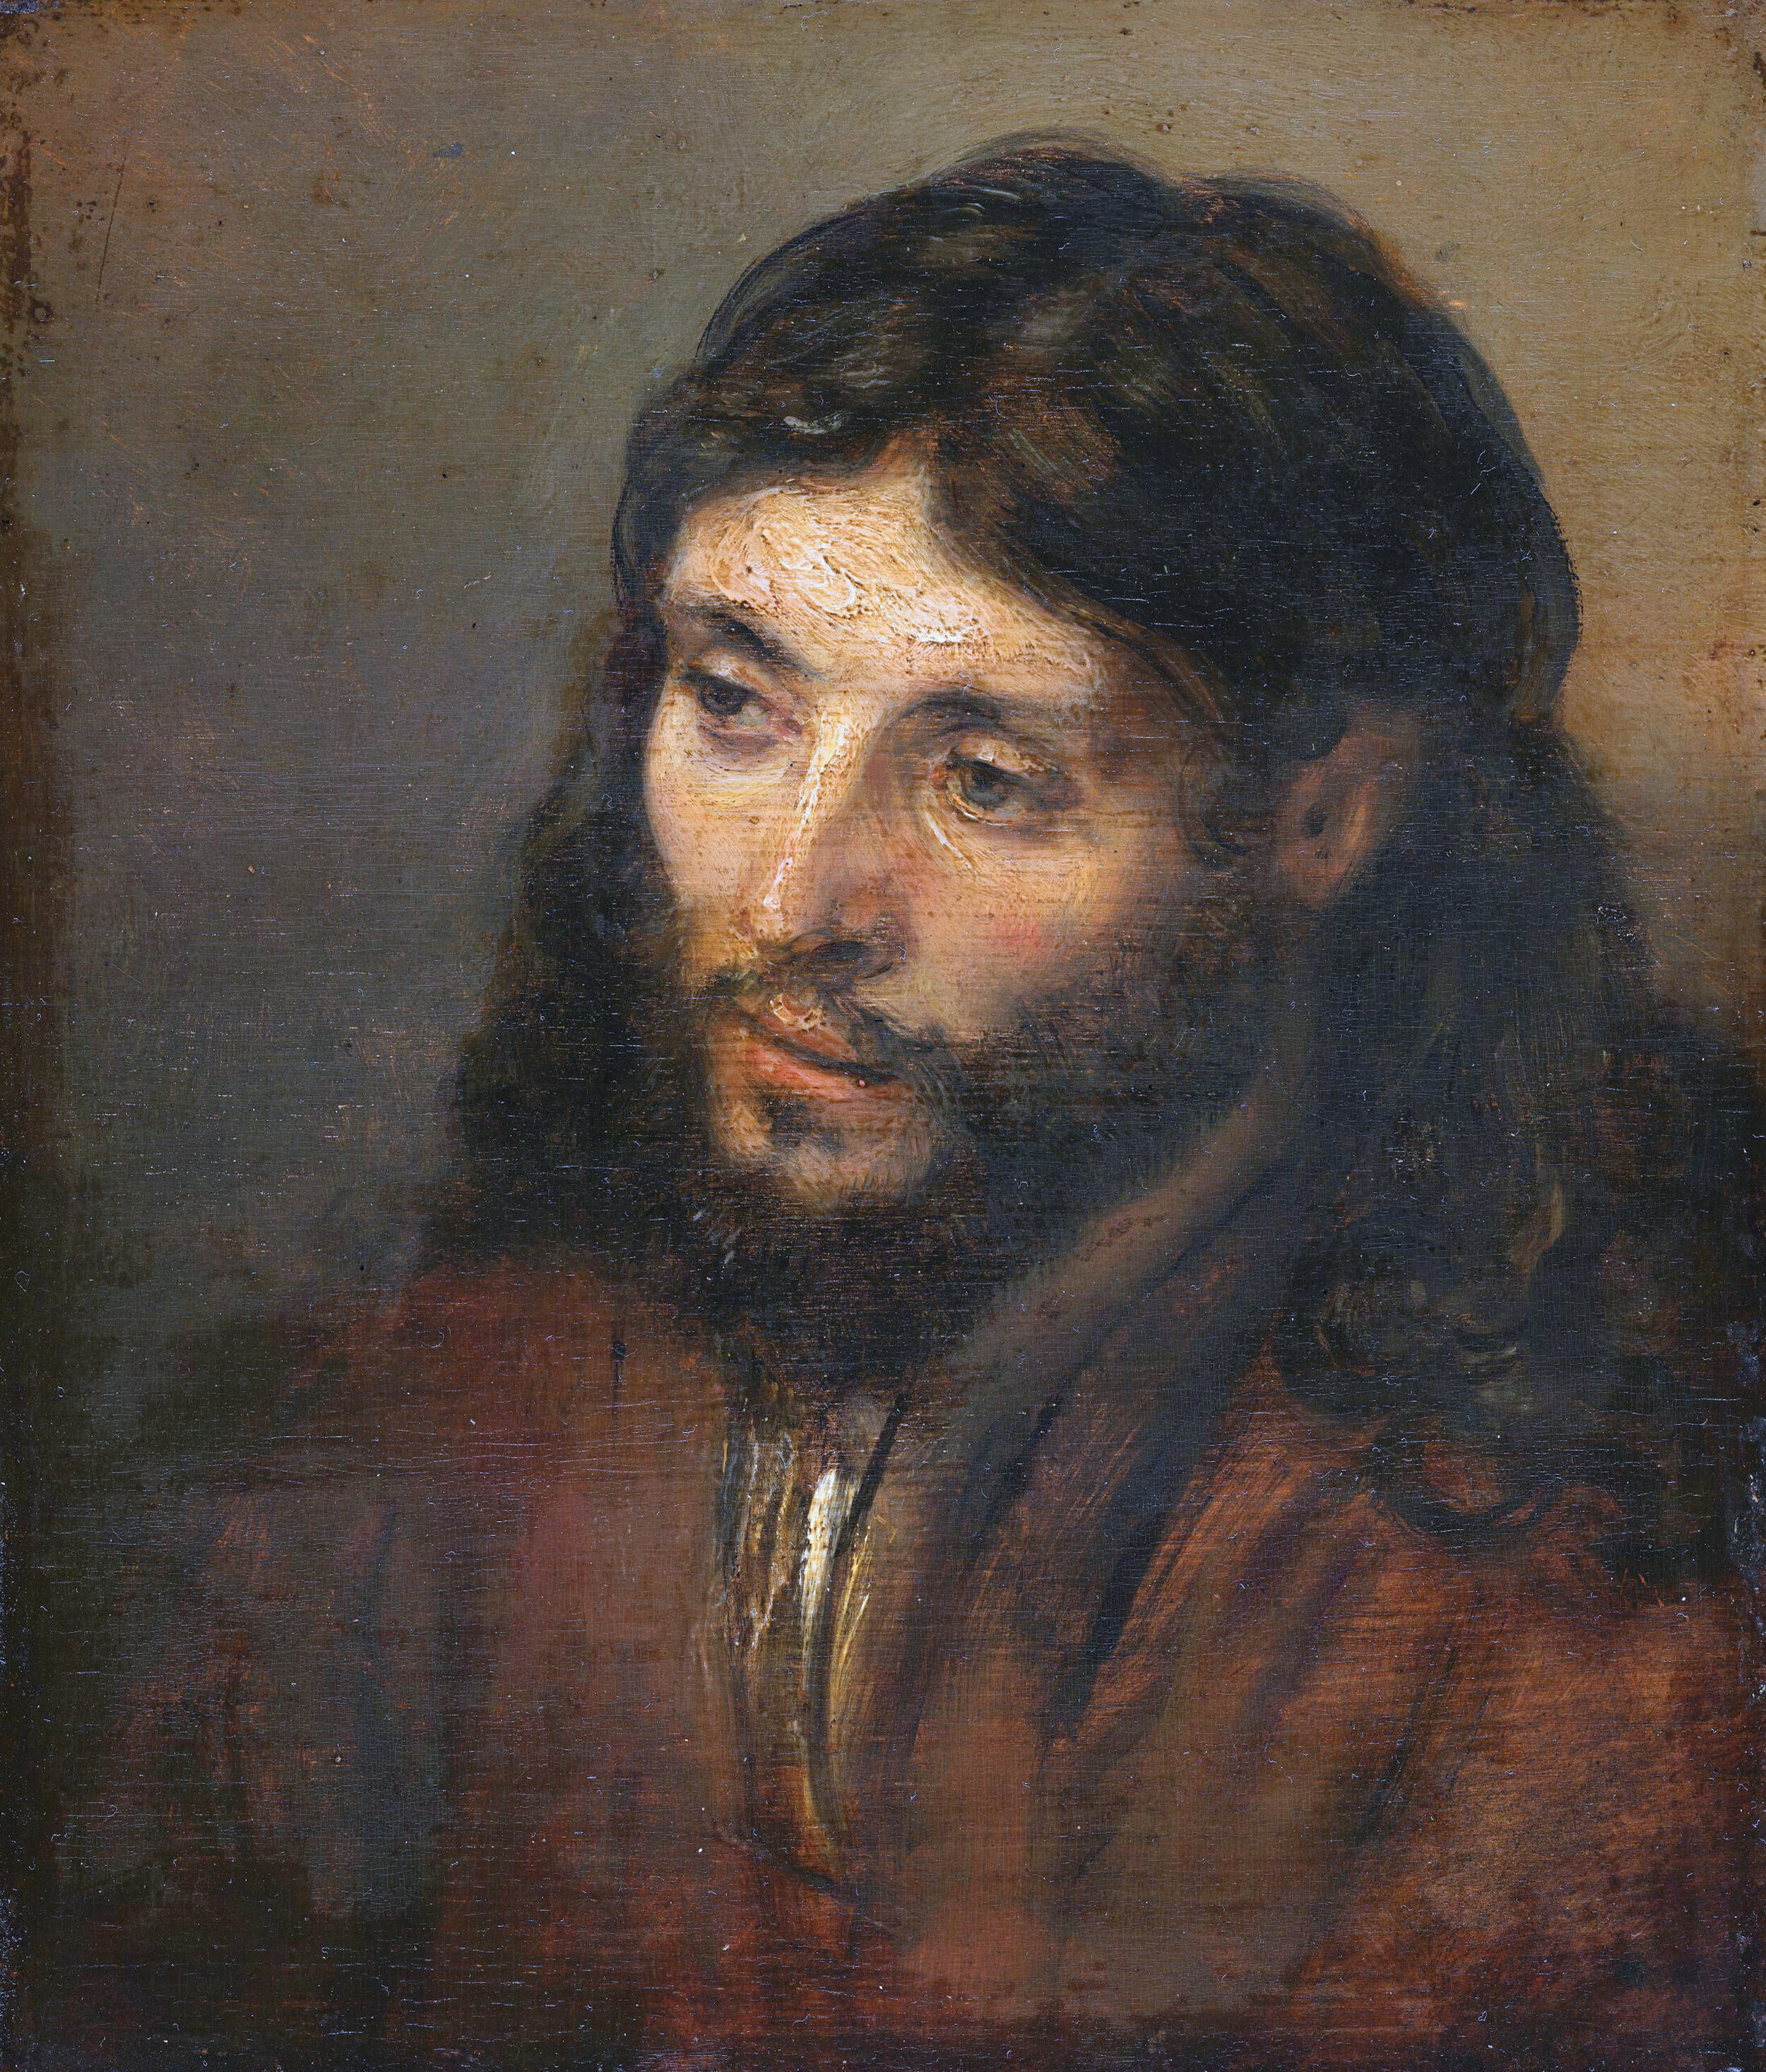 Ein Christus nach dem Leben, Rembrandt van Rijn 1648